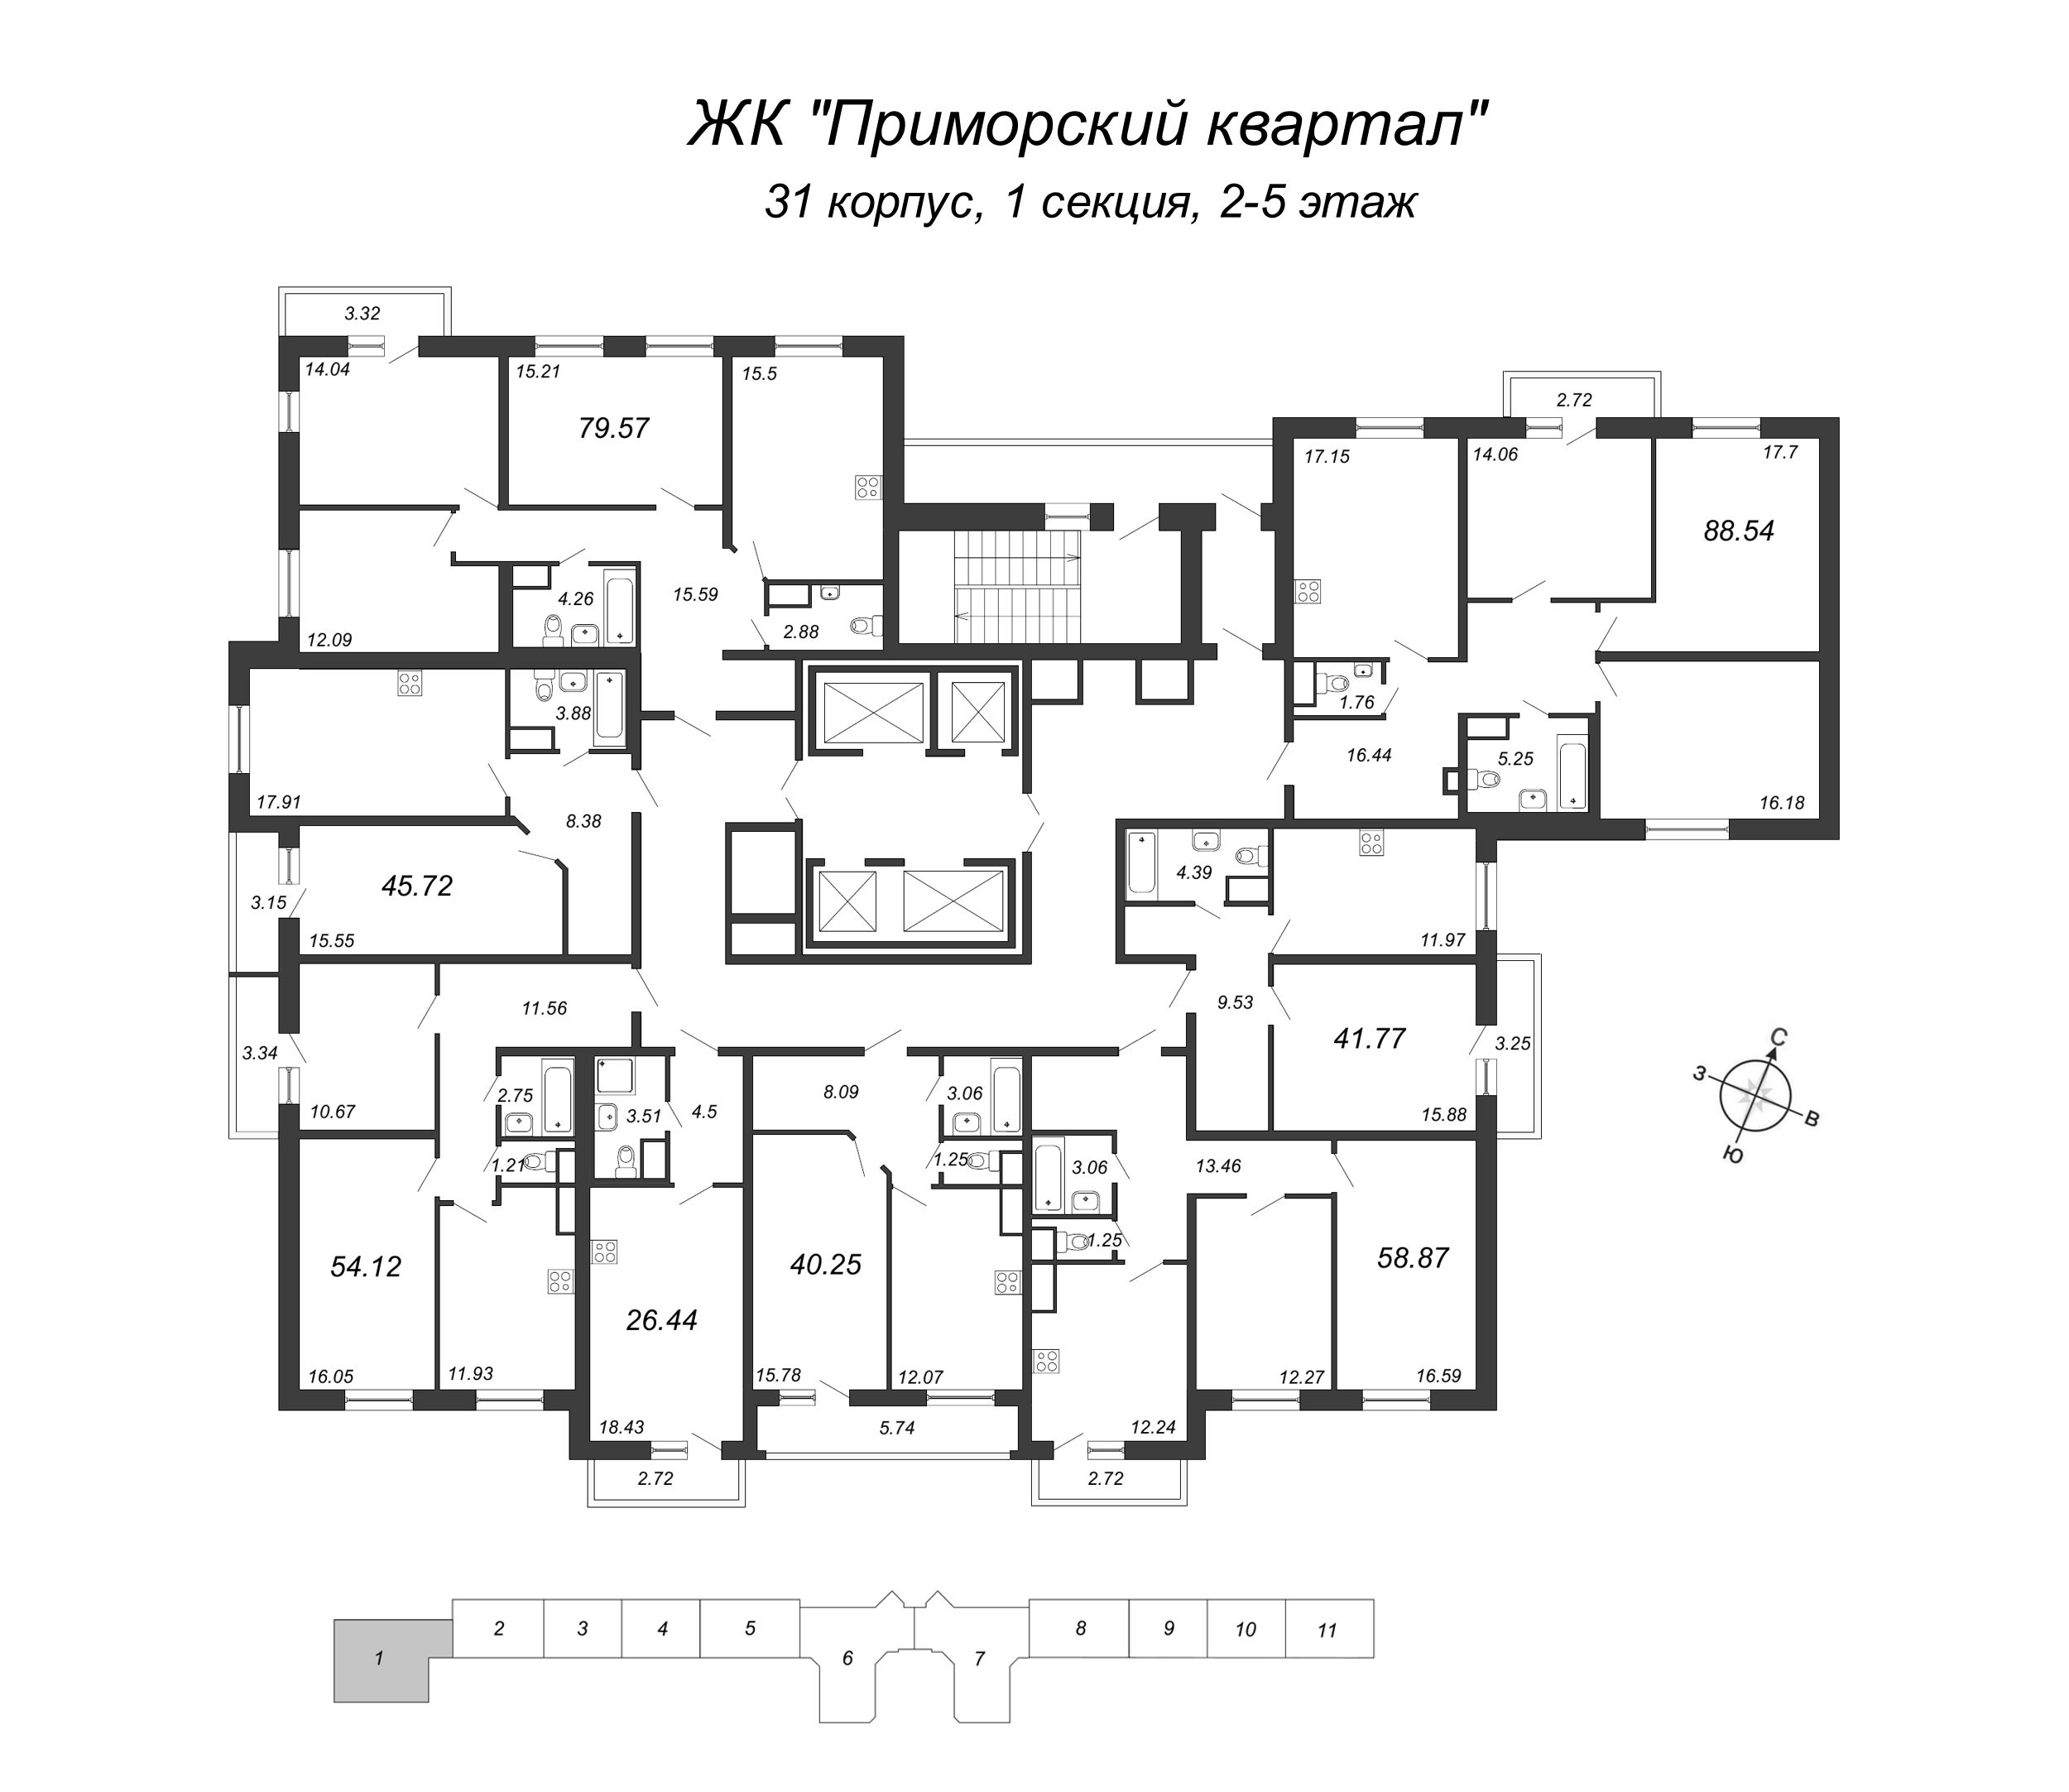 3-комнатная квартира, 88.54 м² в ЖК "Приморский квартал" - планировка этажа